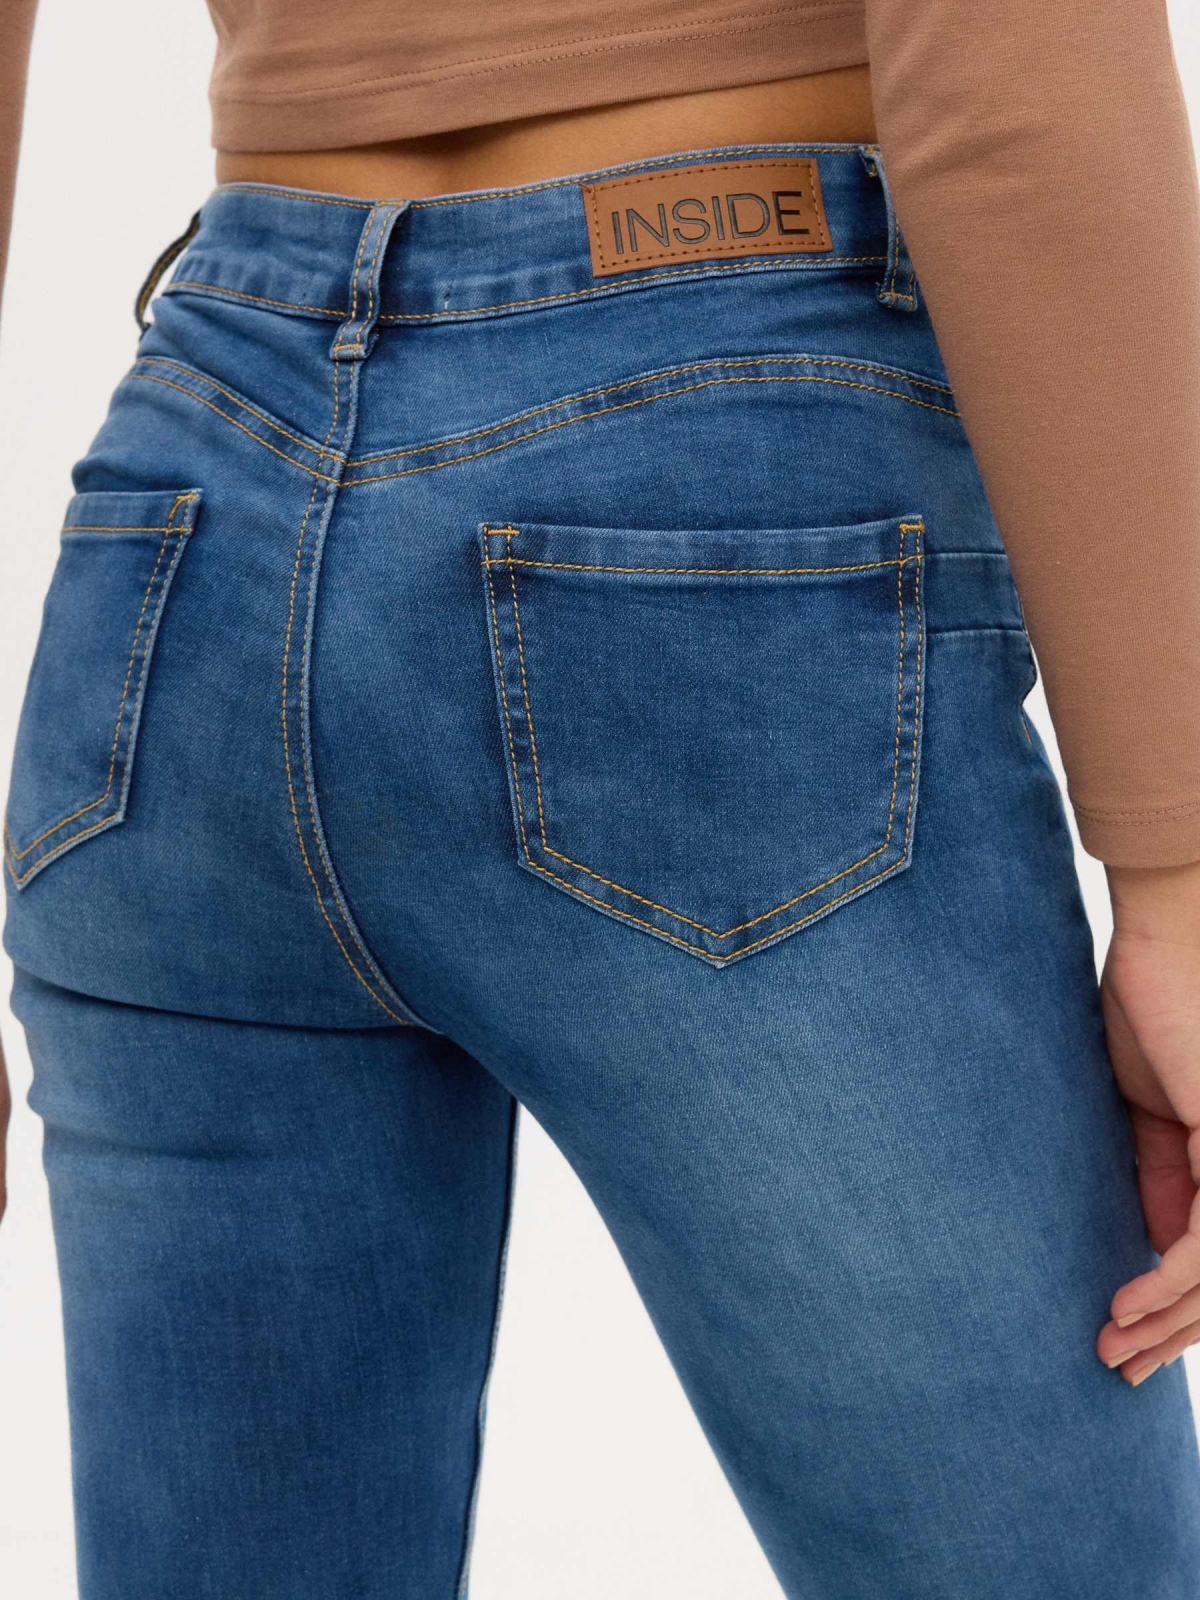 Jeans skinny push-up azul azul vista detalhe